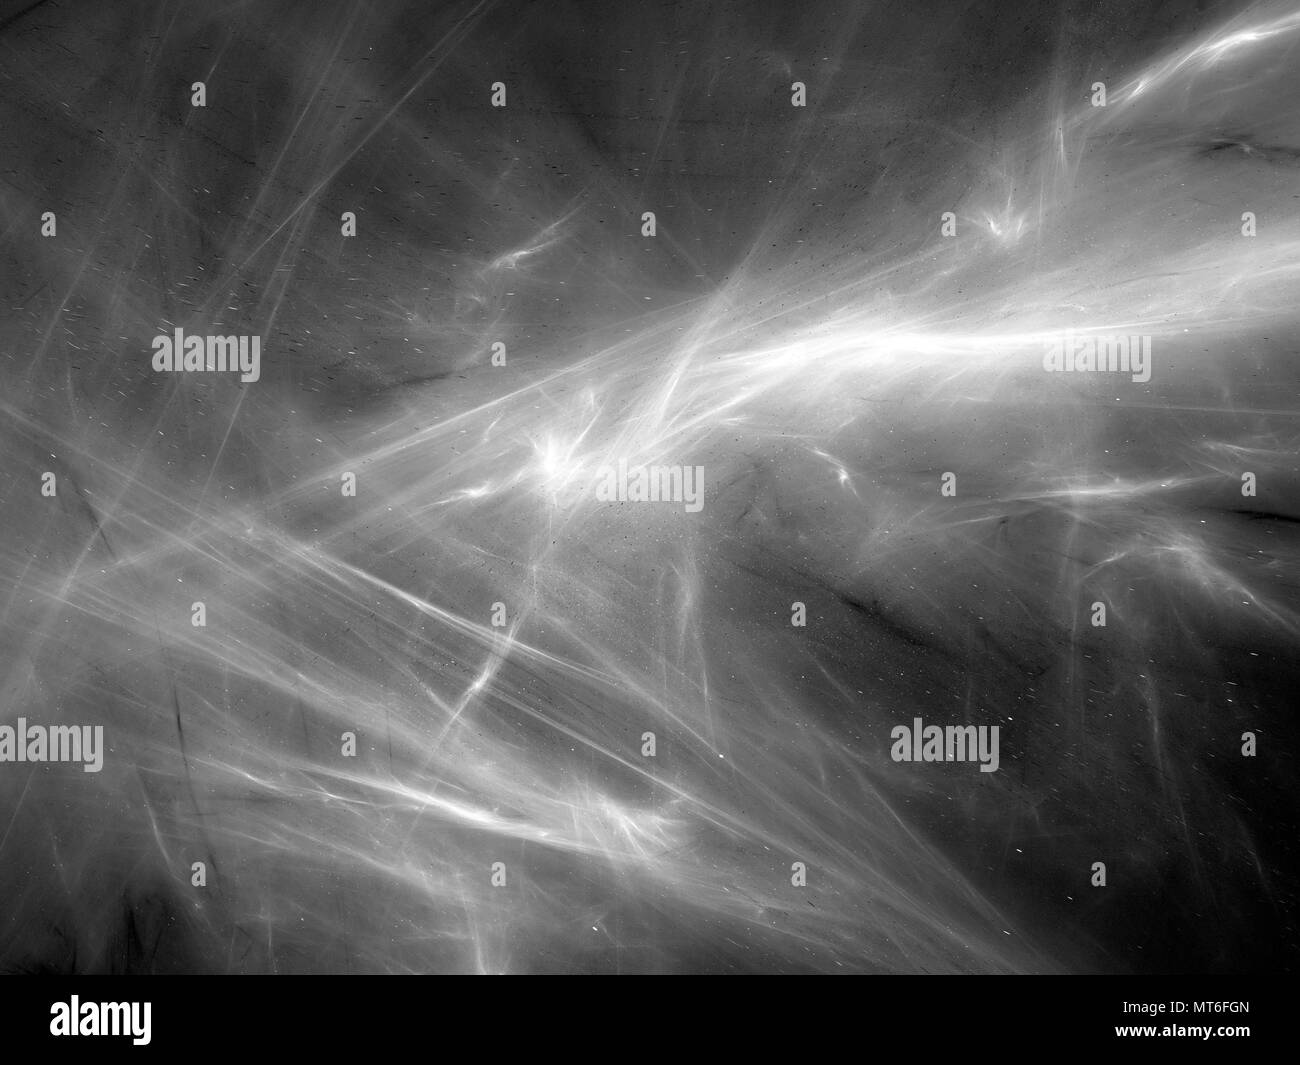 Leuchtende Nebel Textur im Raum, Schwarzweiß-Effekt, computer-generierte Zusammenfassung Hintergrund, 3D-Rendering Stockfoto